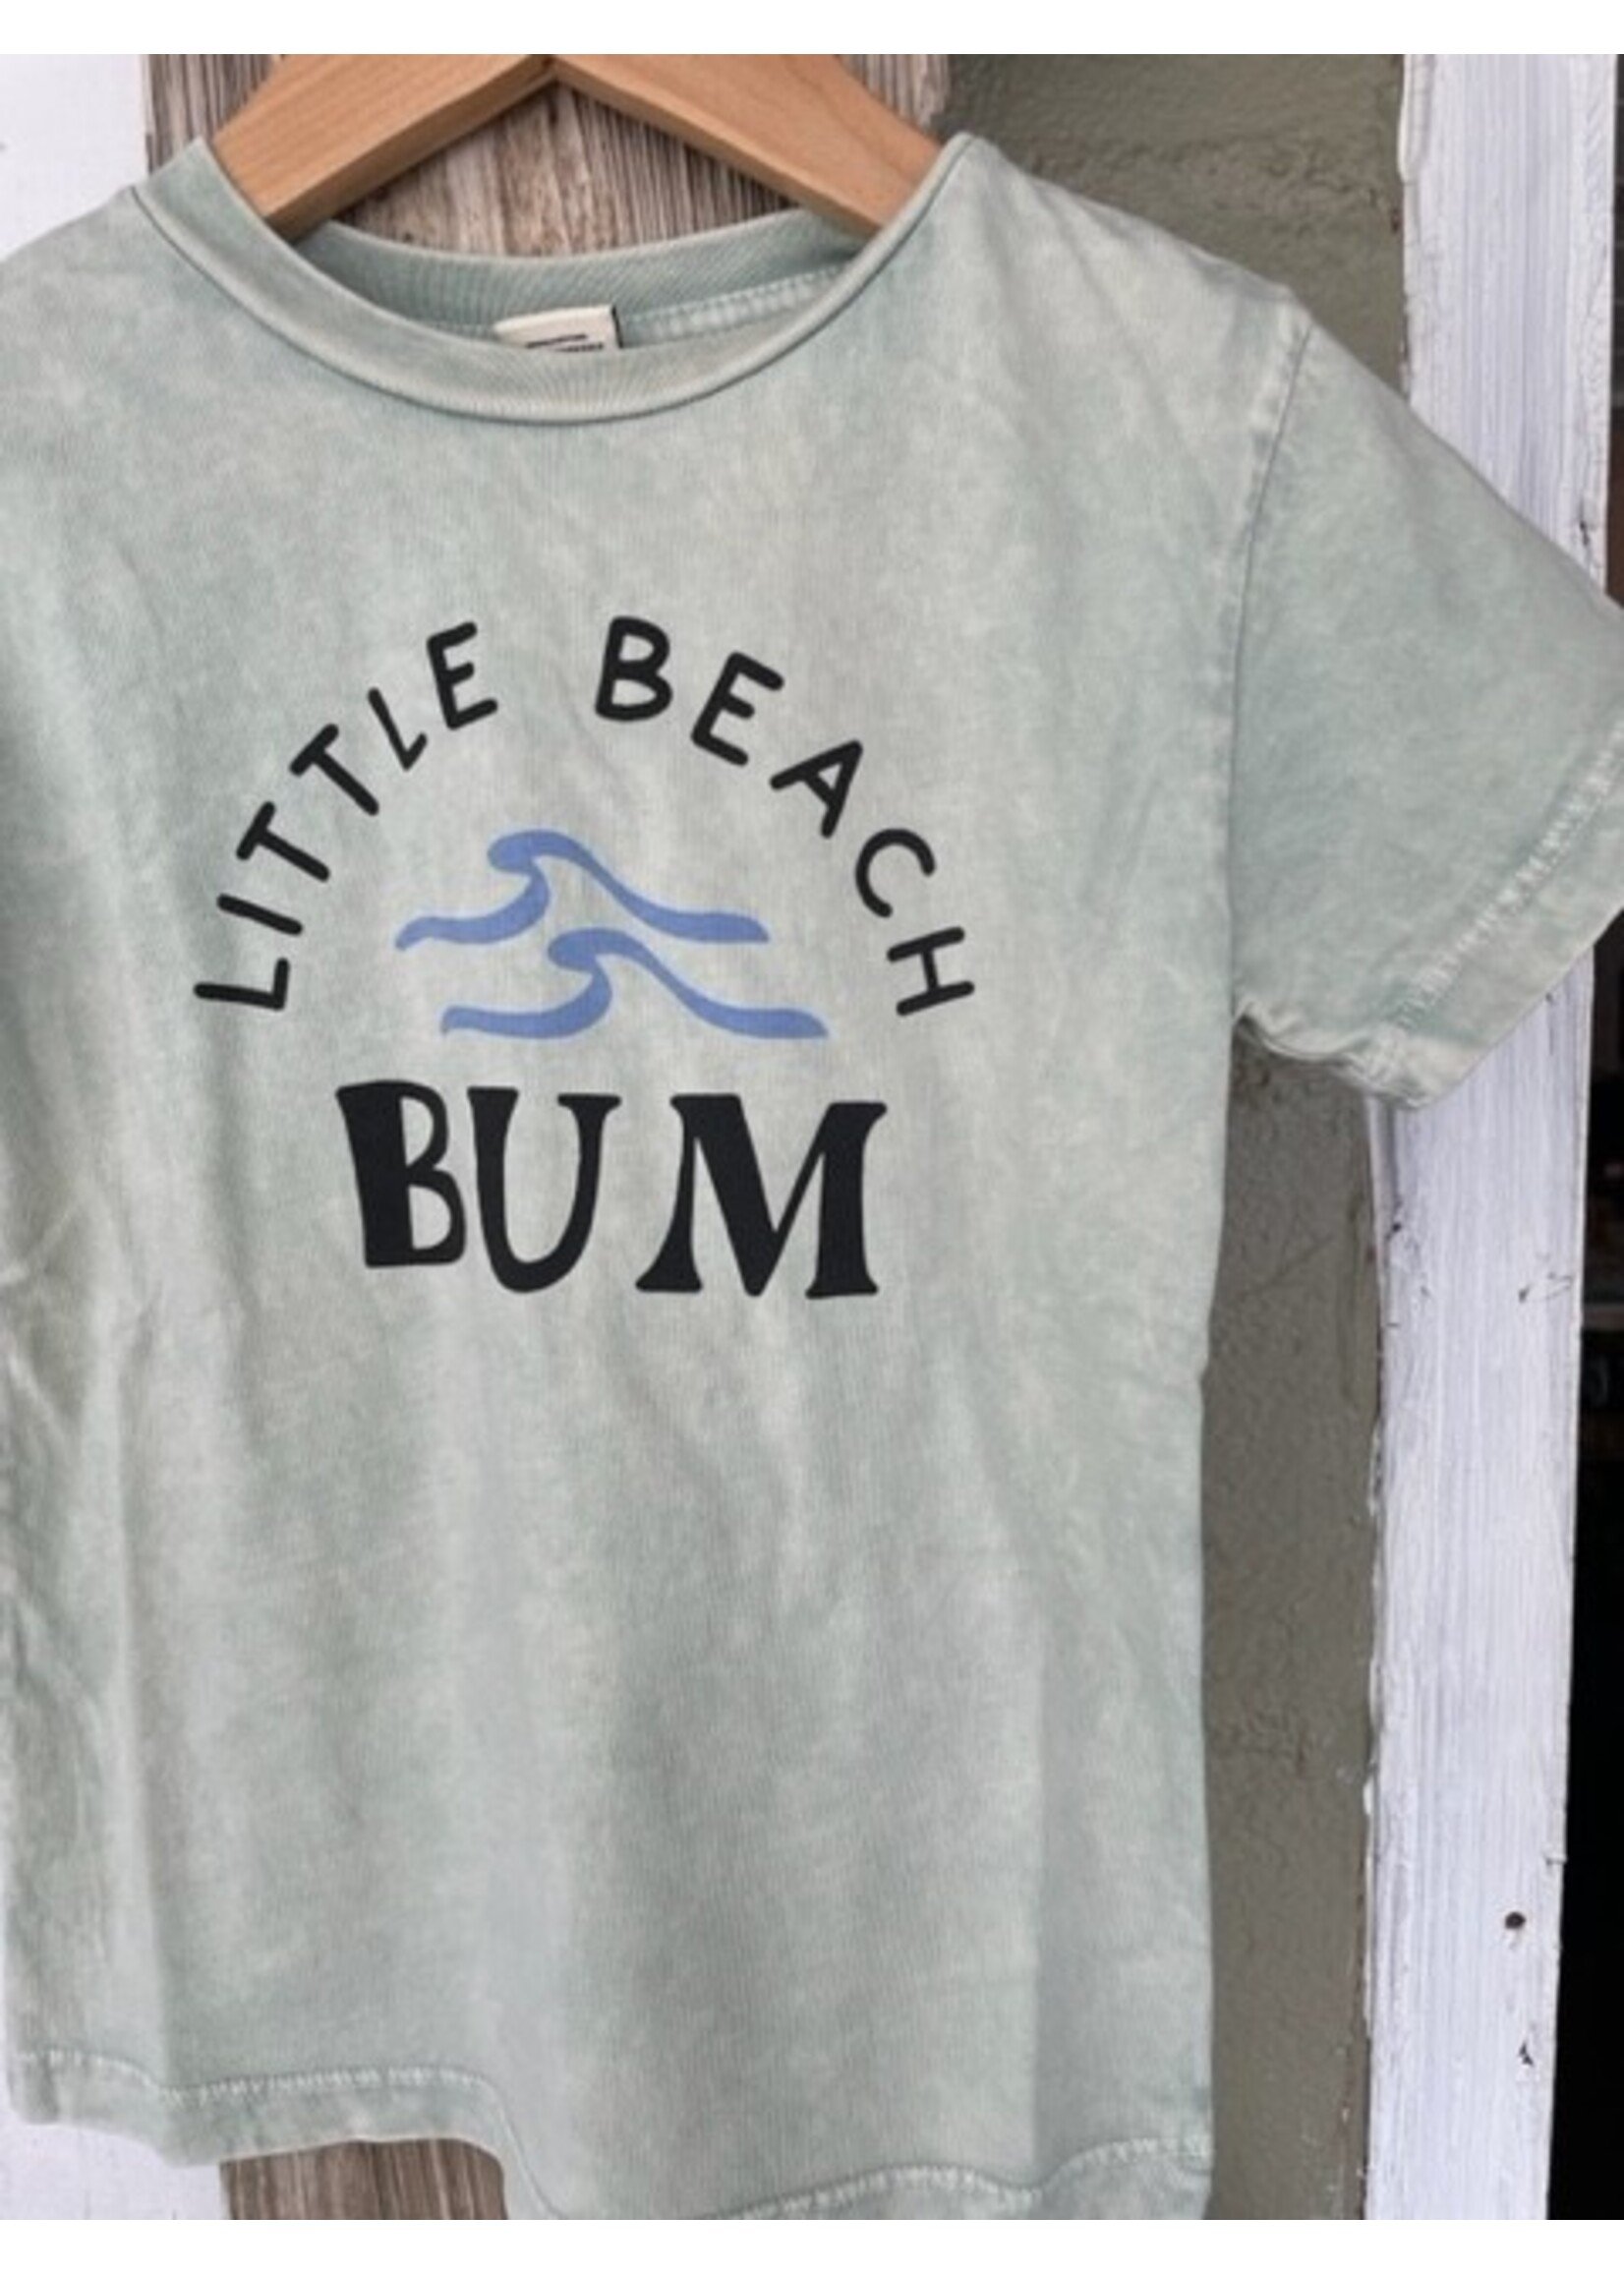 Little Beach Bum Tee